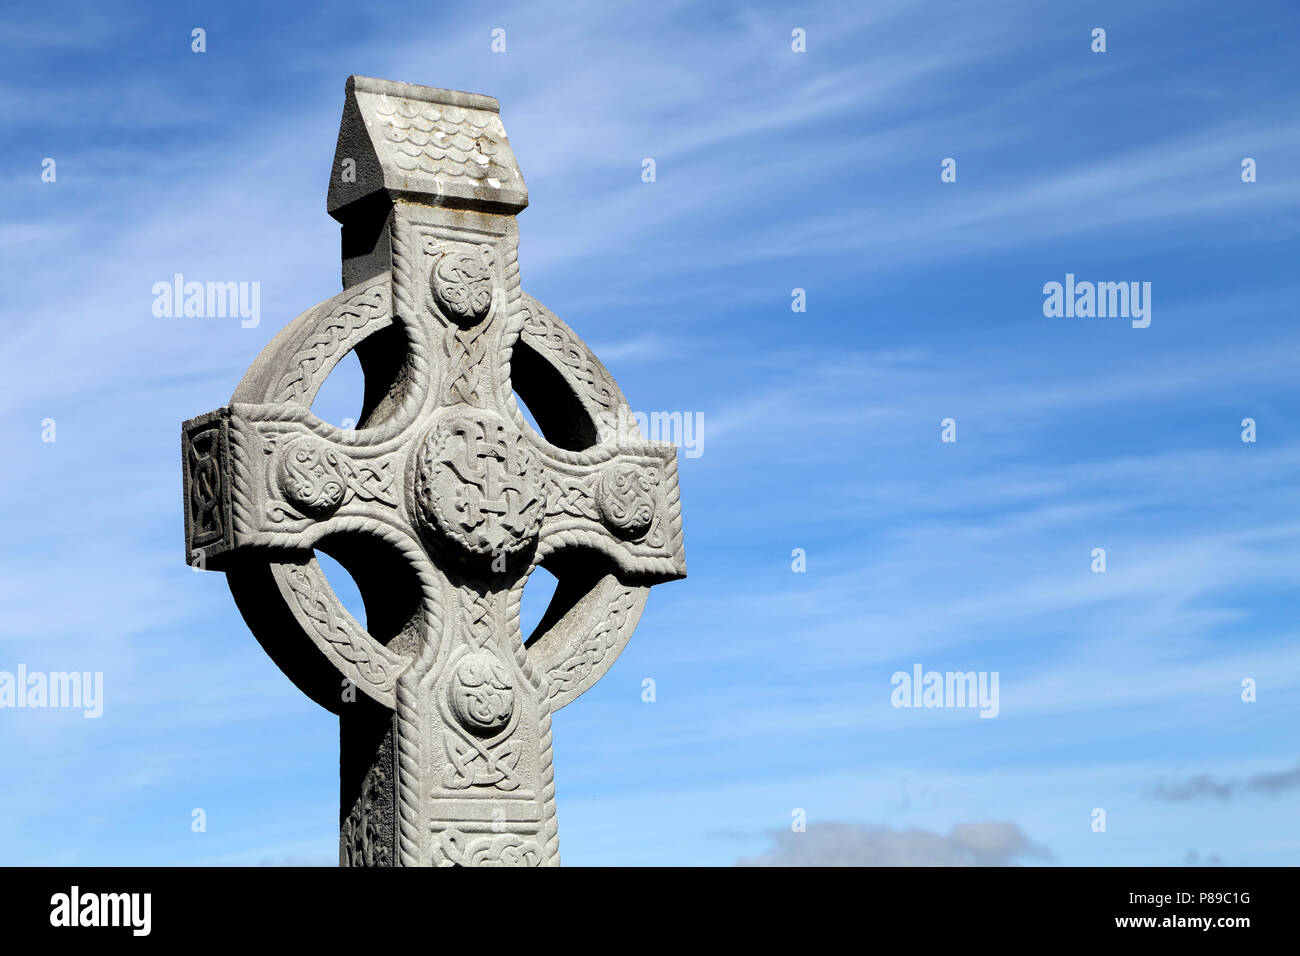 Cong Abbey è un sito storico situato a Cong, sul confine delle contee di Galway e Mayo, in Irlanda la provincia di Connacht. Le rovine della ex Foto Stock